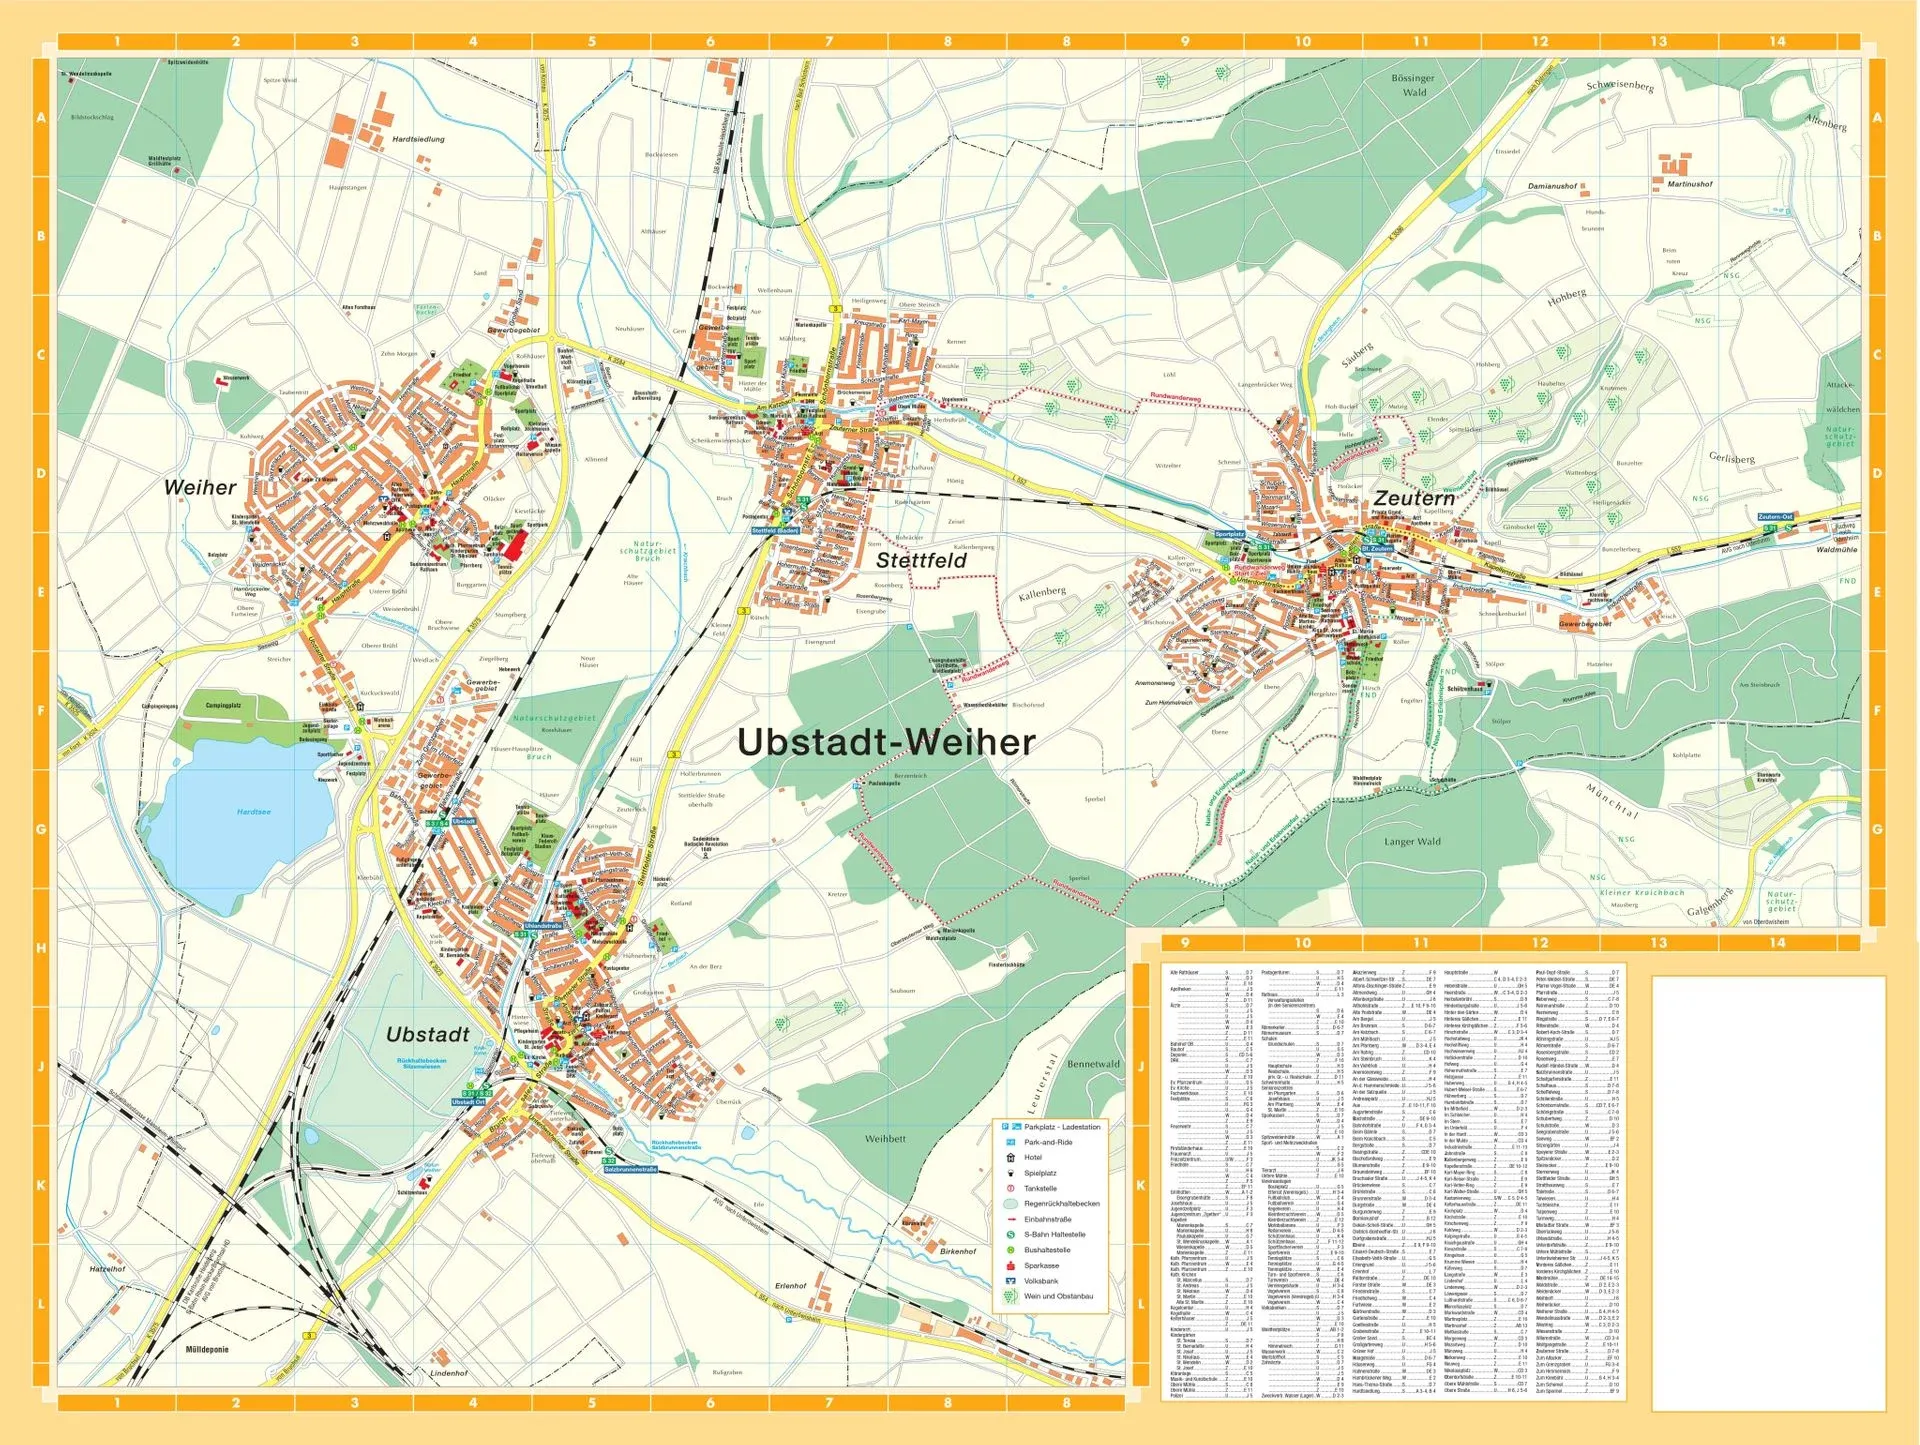 Ubstadt-Weiher in Angaben und Zahlen - Über